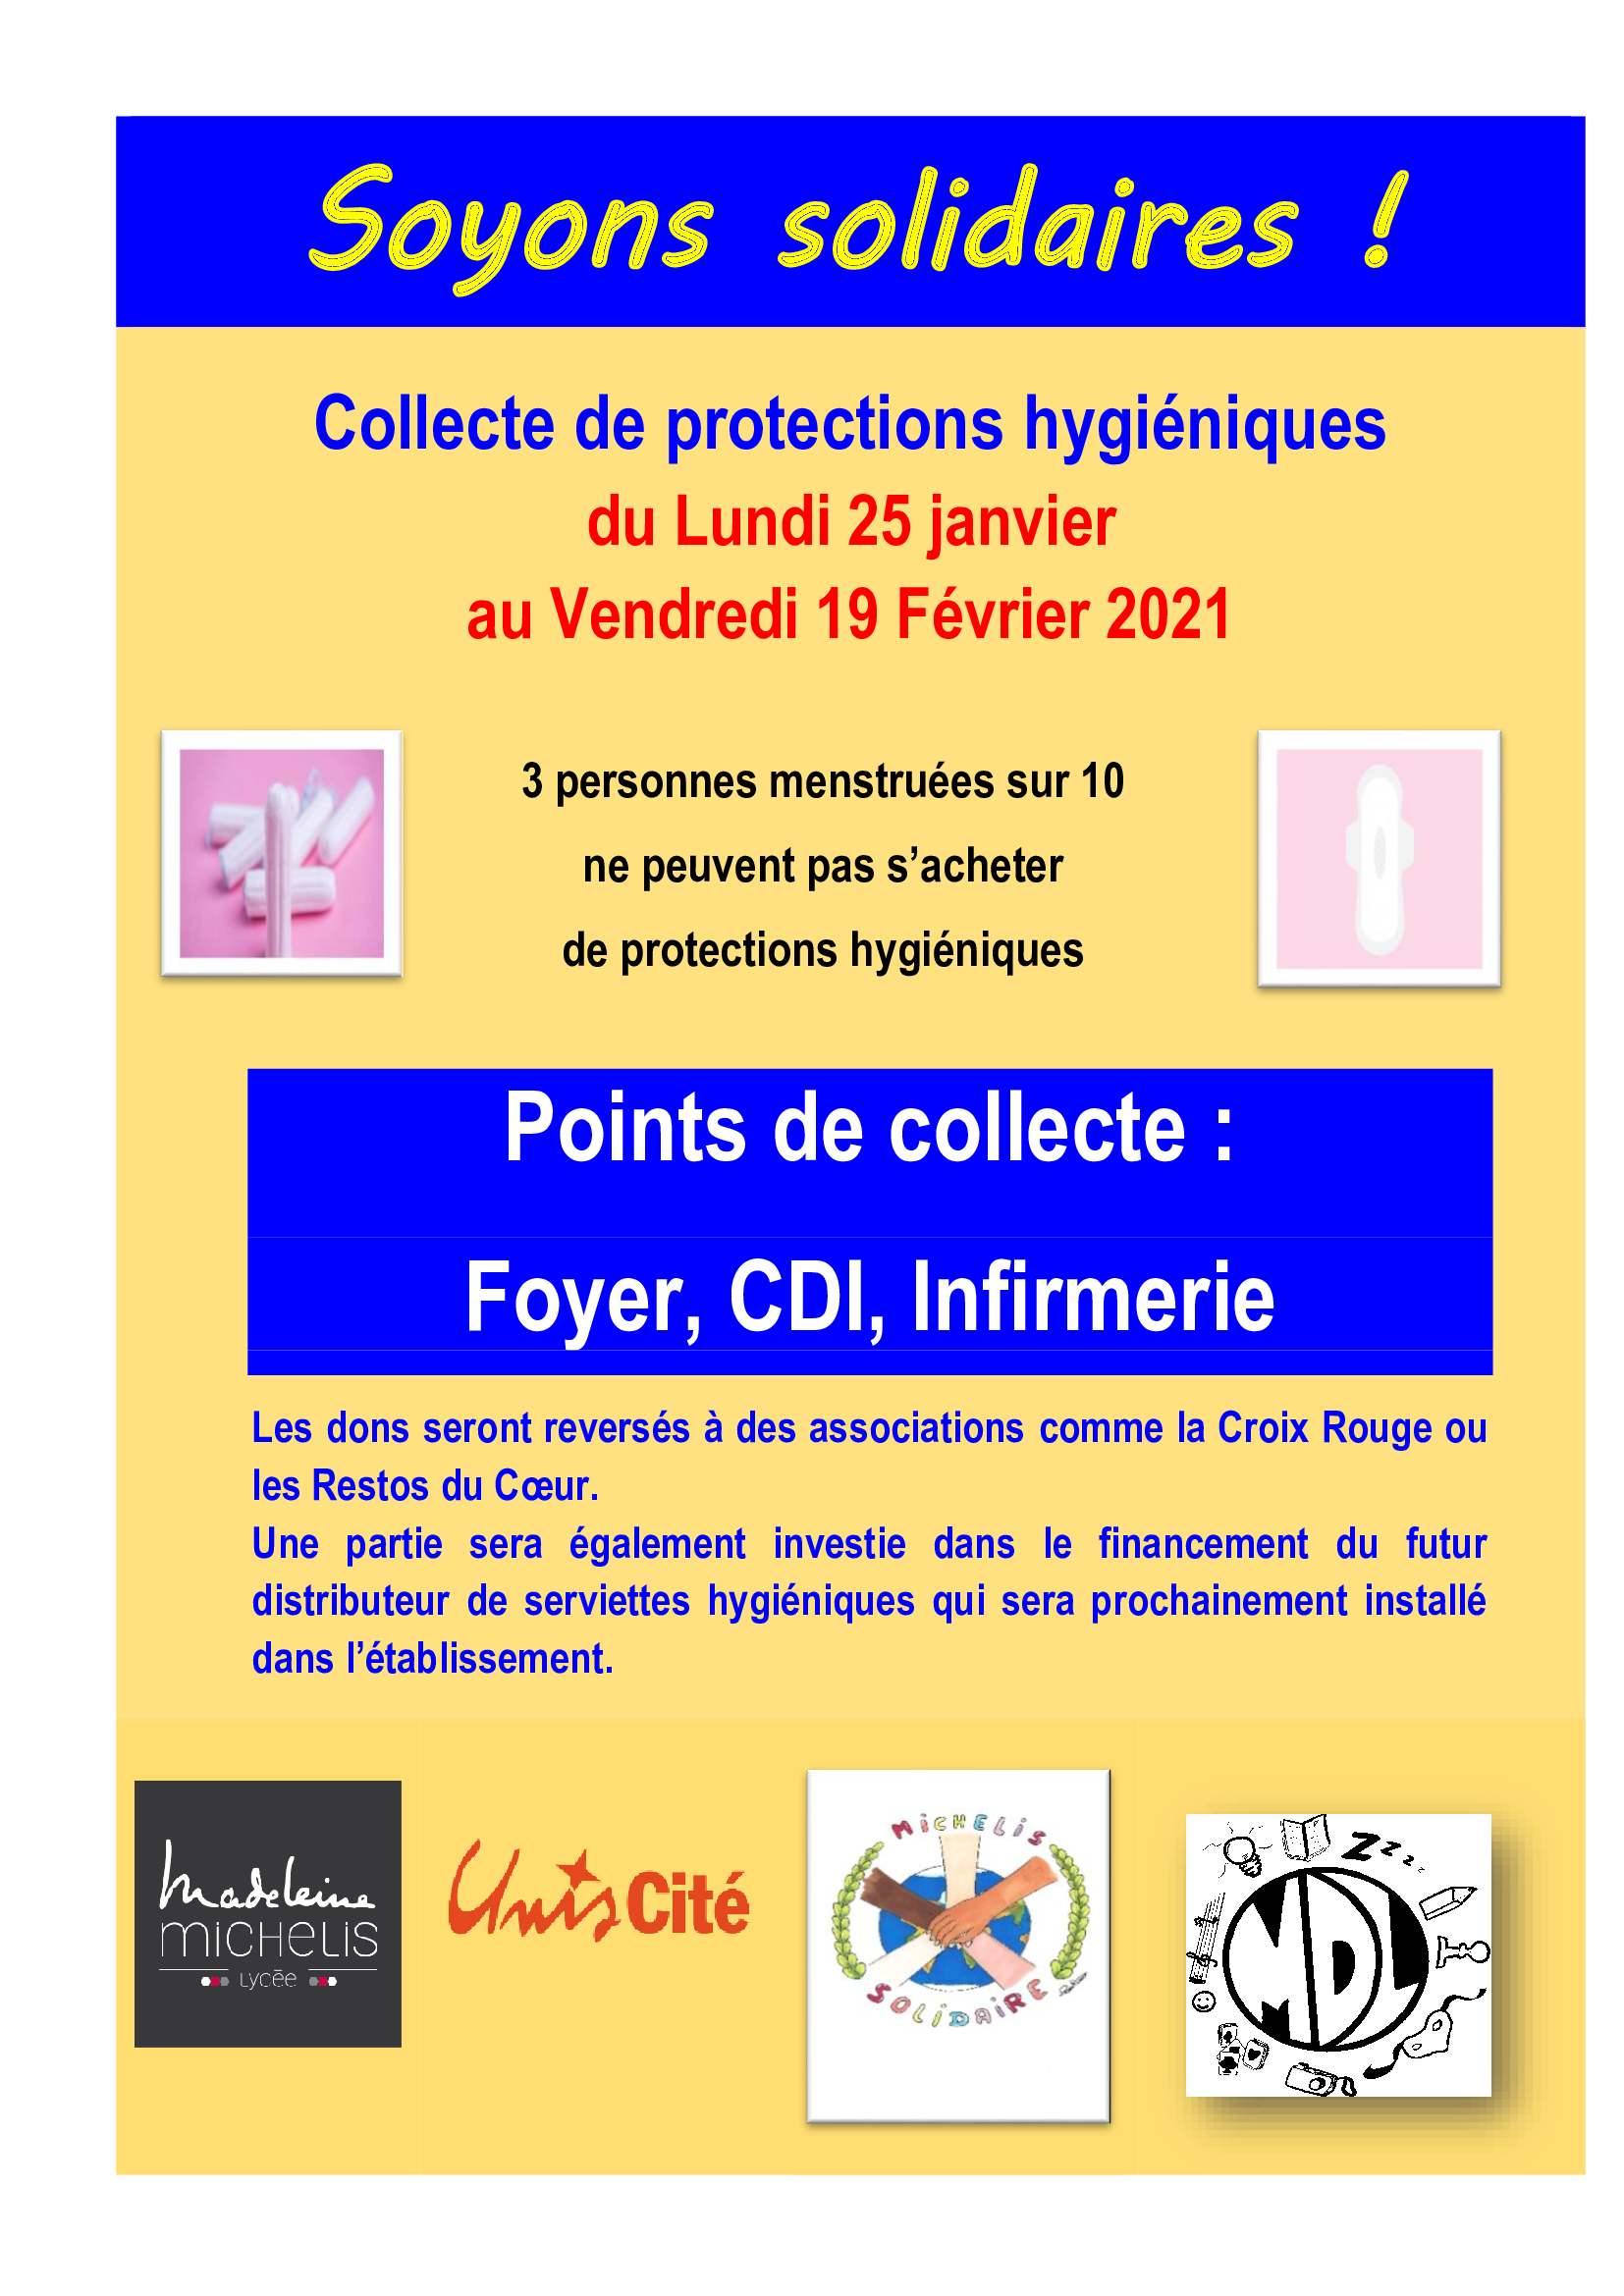 Collecte-de-protections-hygieniques.png, janv. 2021